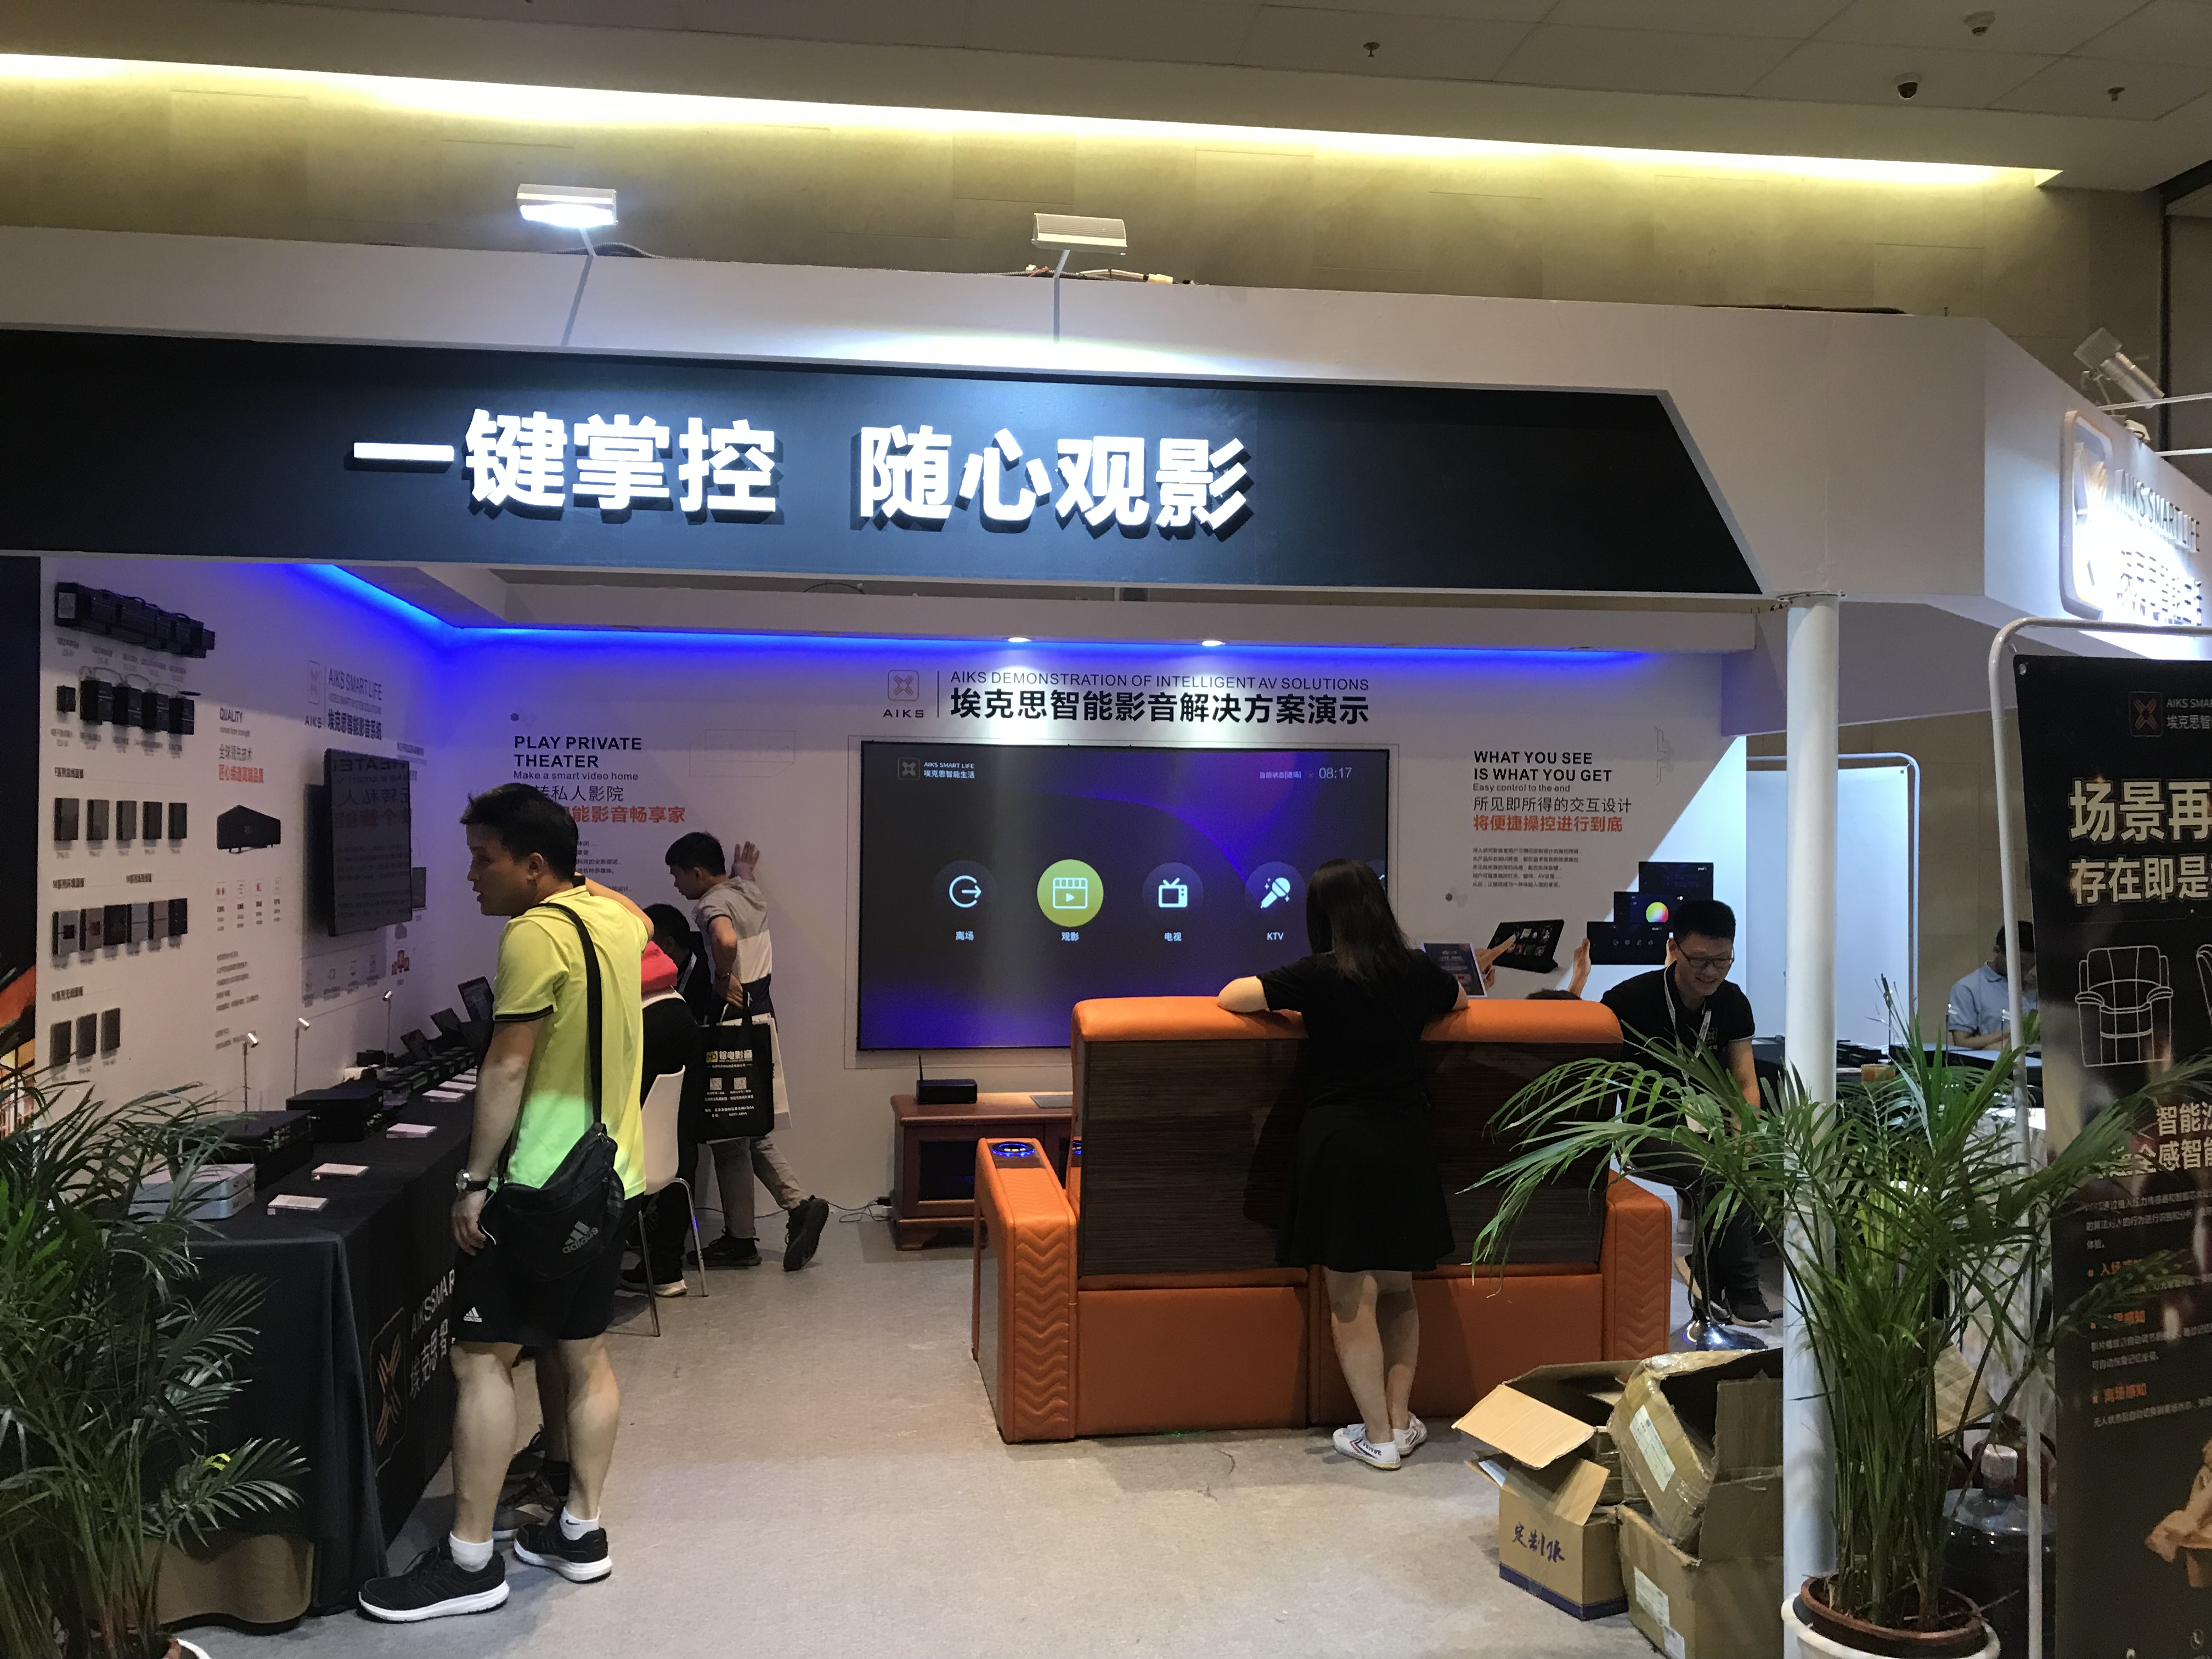 艾斯卡影音设备2019年北京CIT展配合合作伙伴打造视听效果